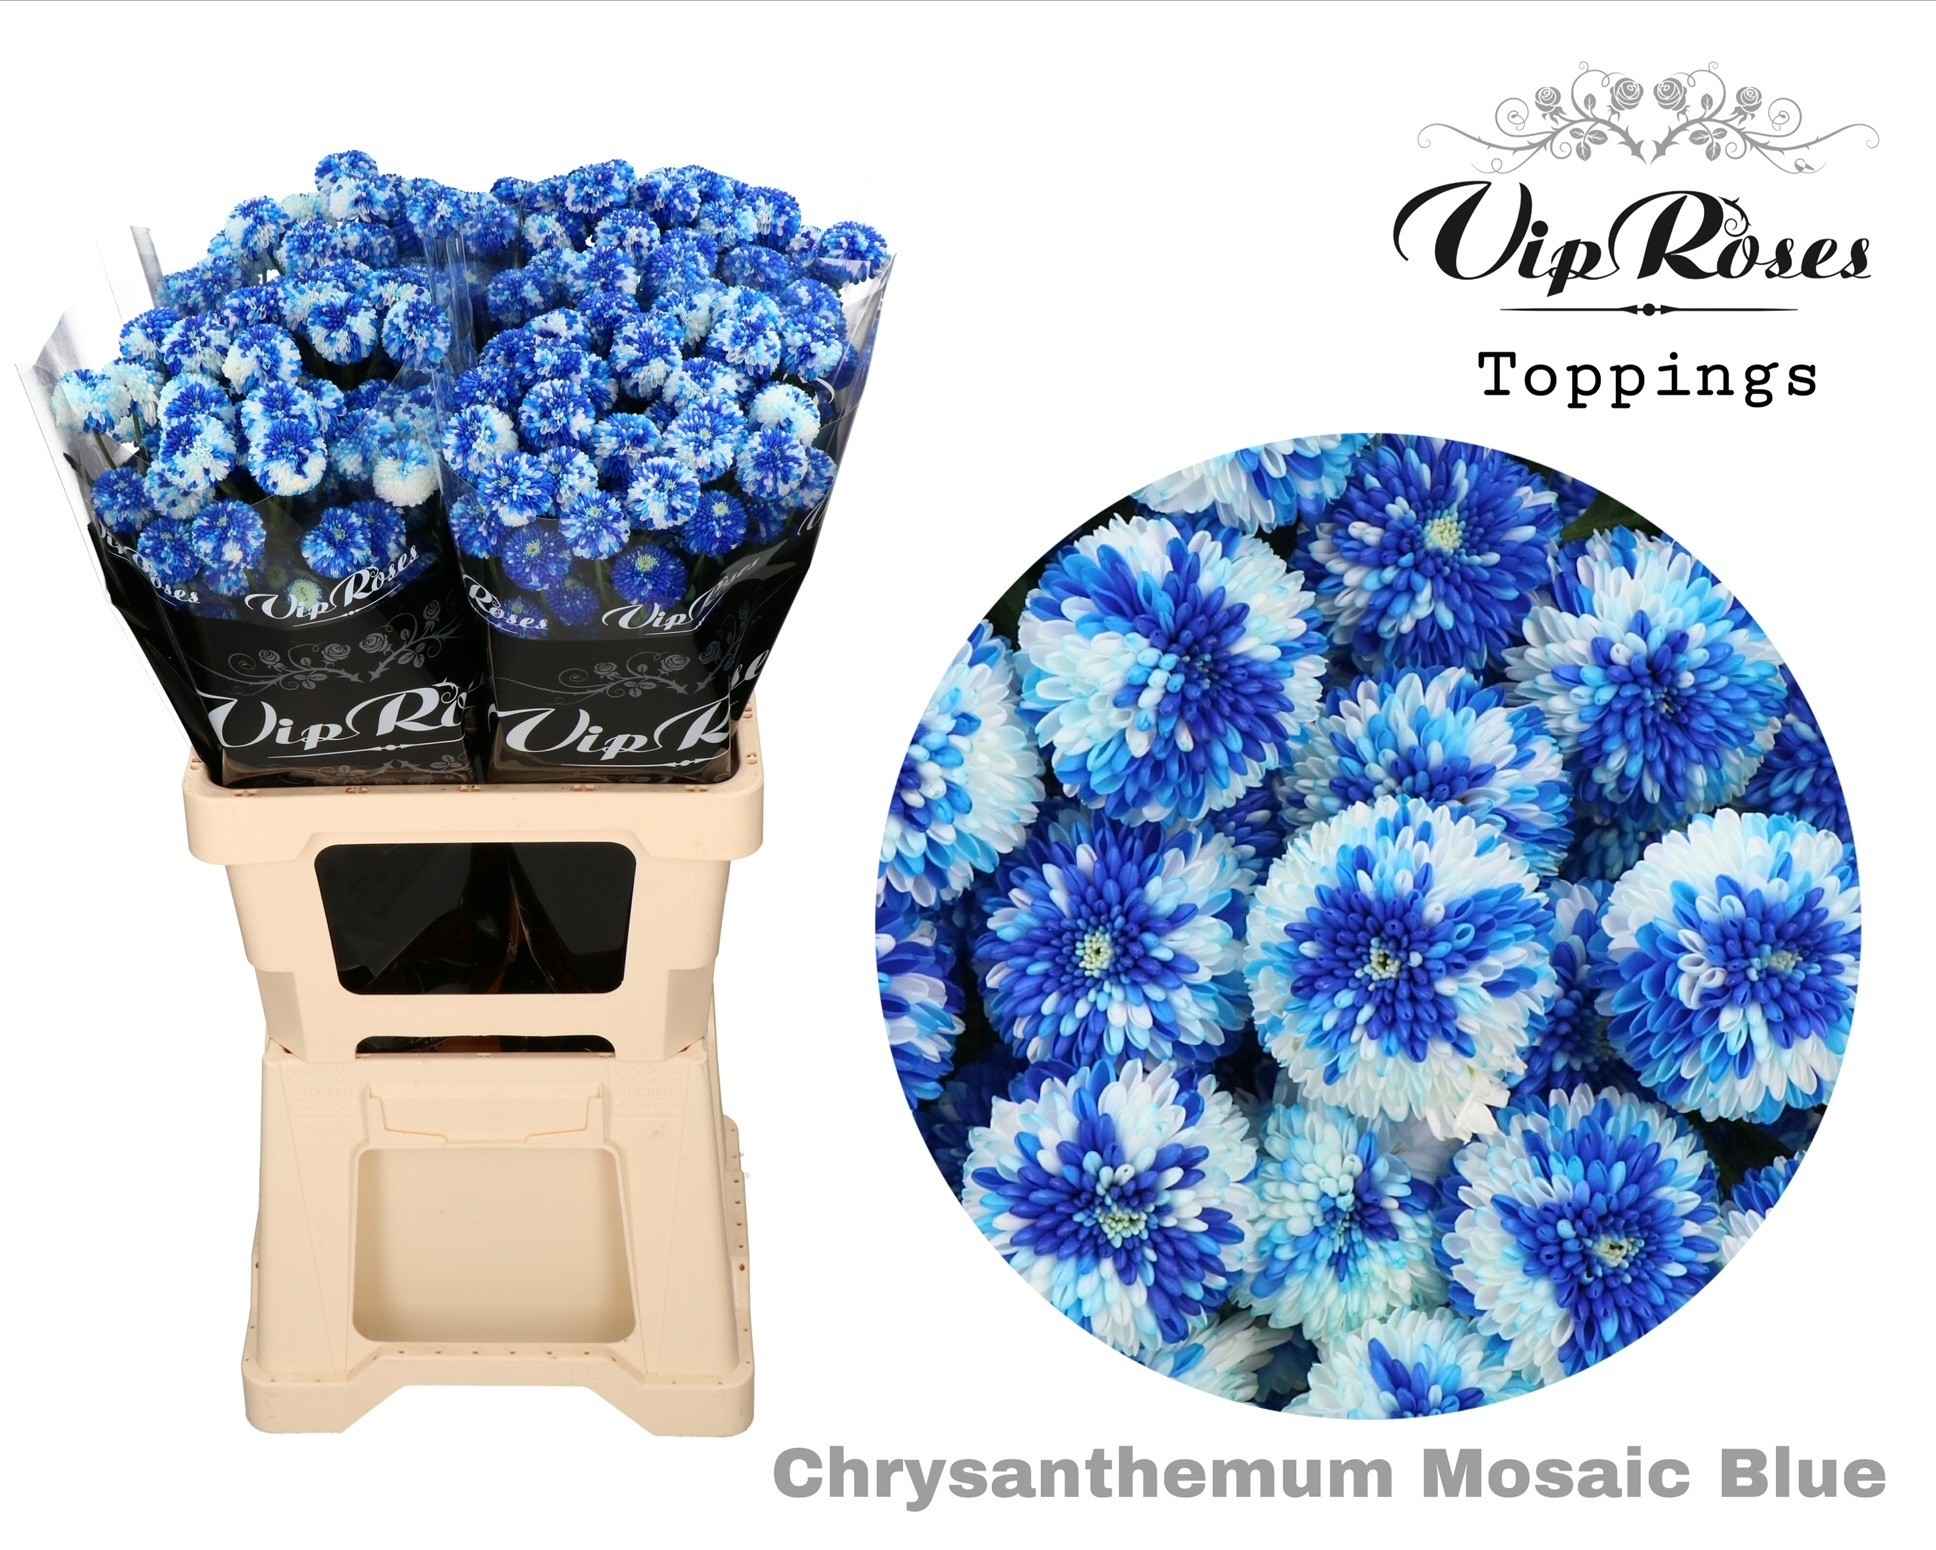 Срезанные цветы оптом Chrys sp paint mosaic dark blue от 20шт из Голландии с доставкой по России